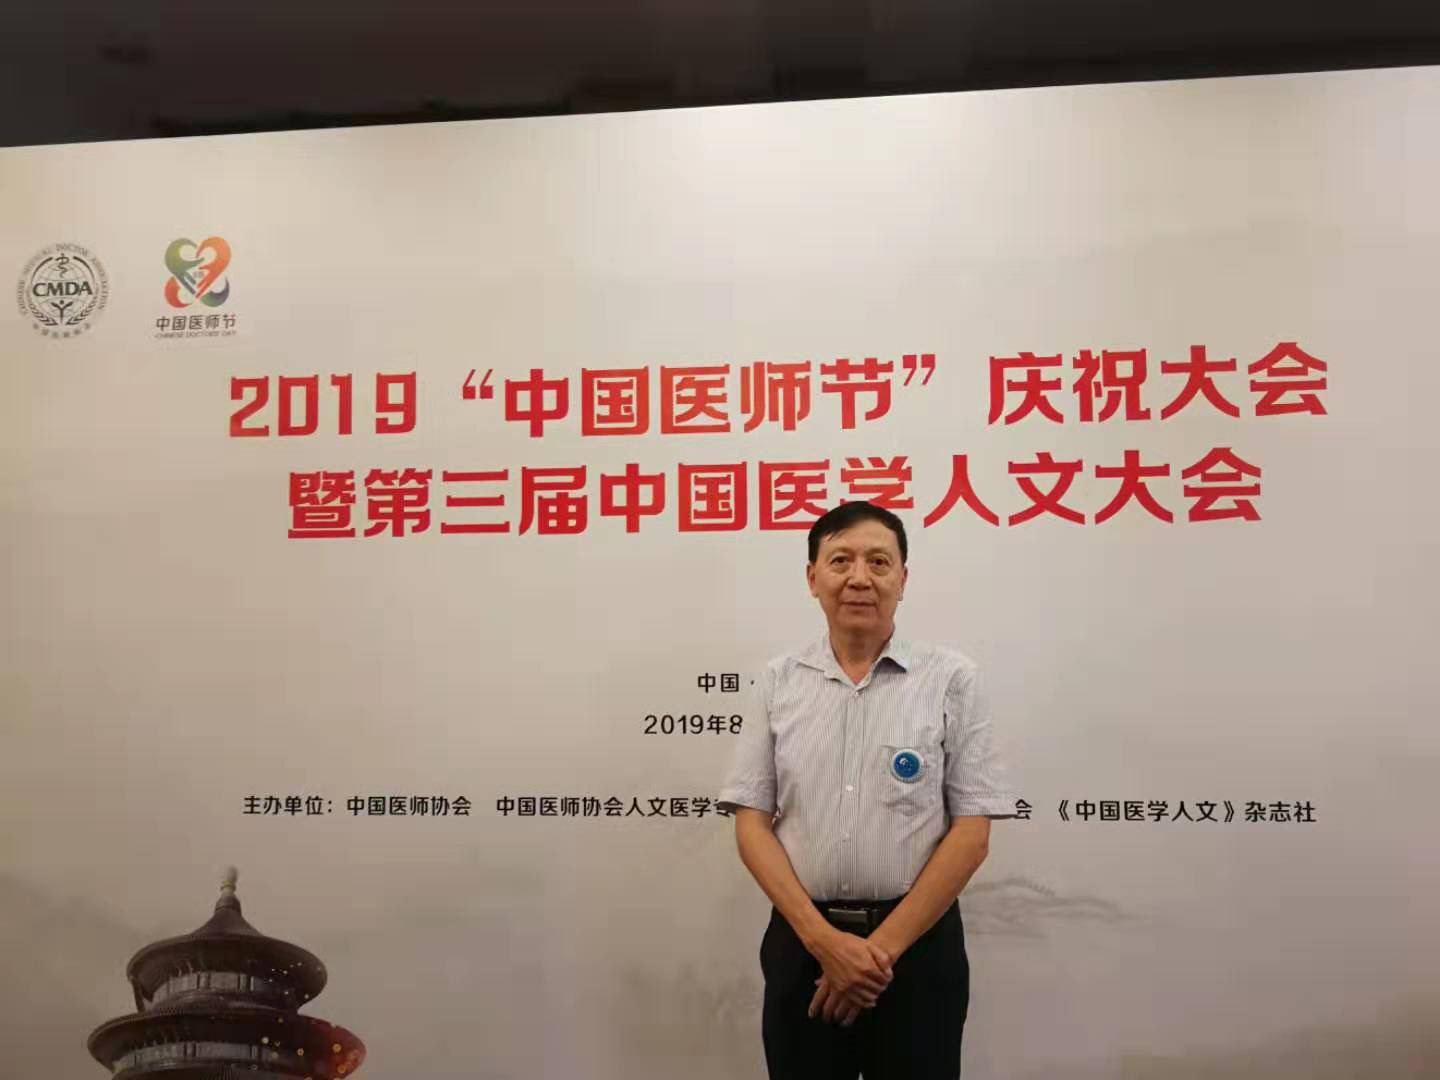 云杉荣耀 | 贾少微博士出席2019年中国医师节庆祝大会，喜获“白求恩式好医生提名奖”